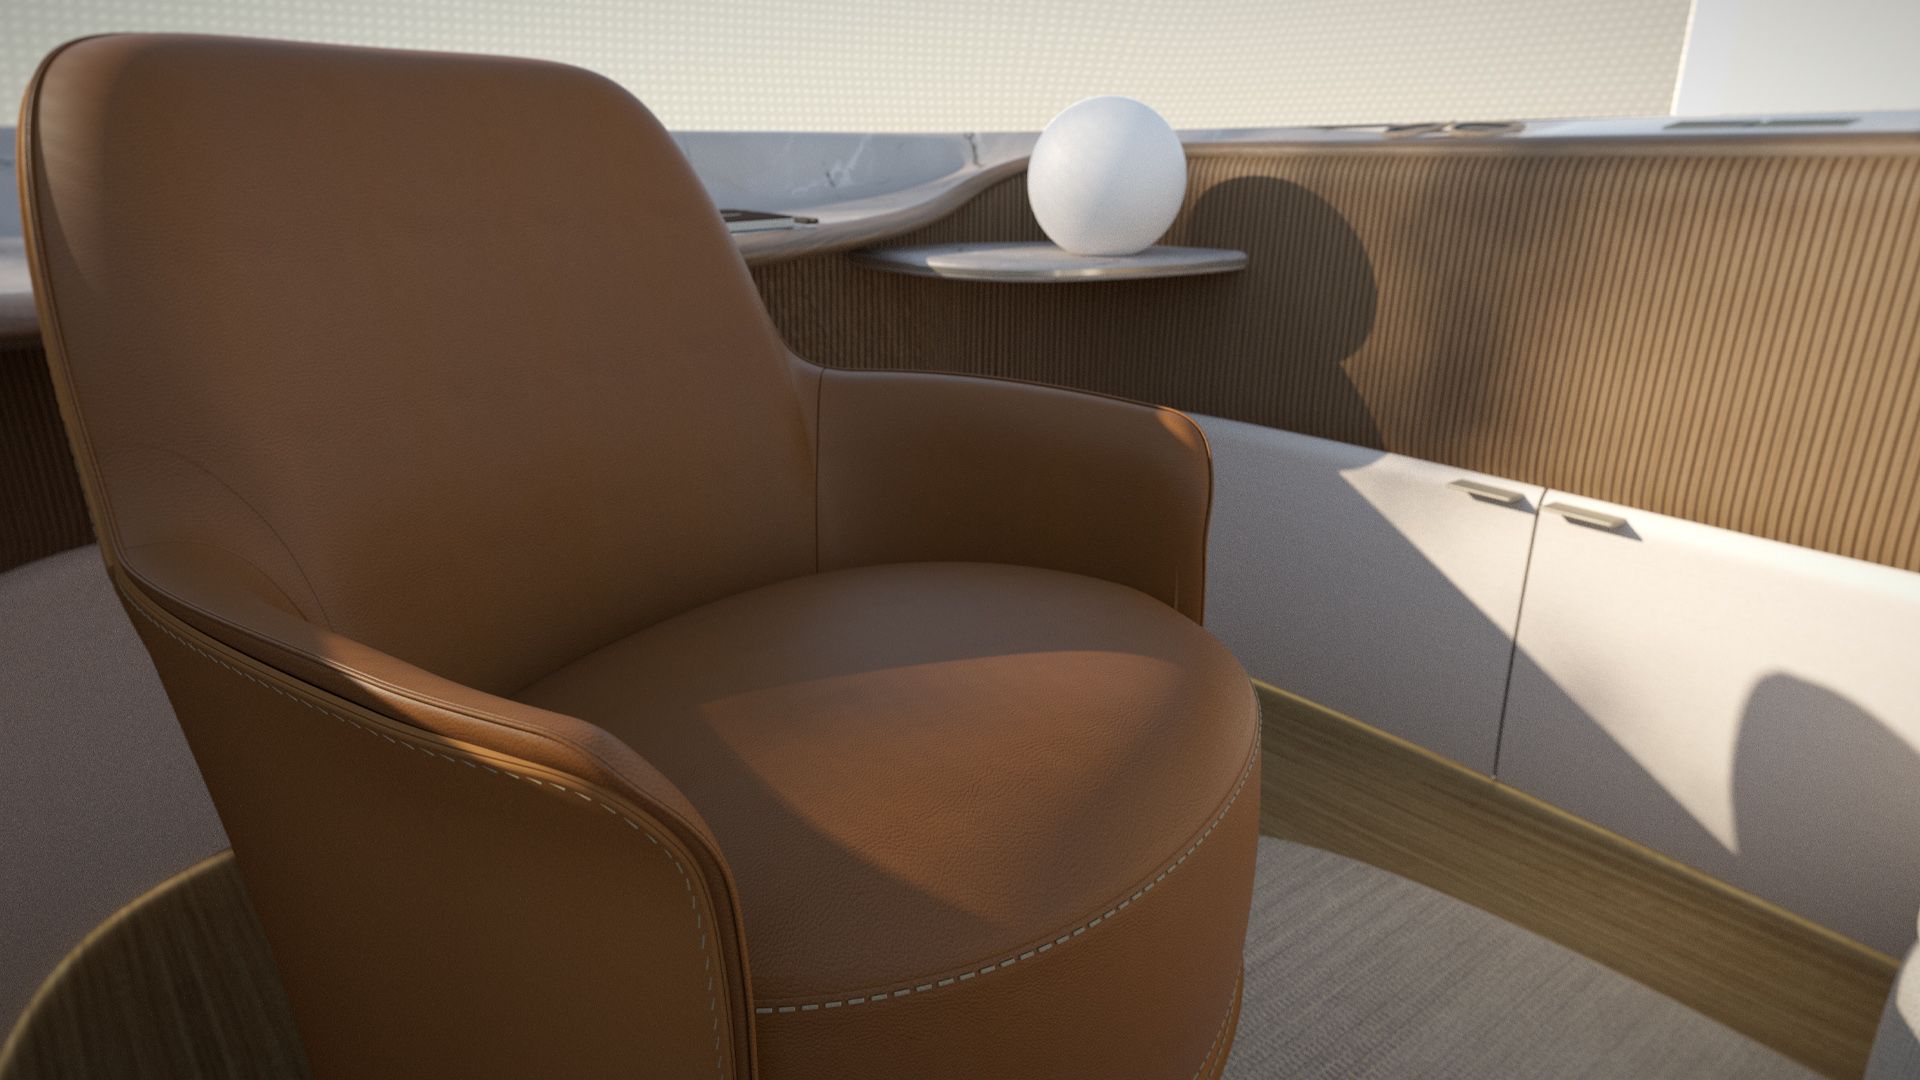 Le design intérieur conçu par Poliform propose un fauteuil marron.